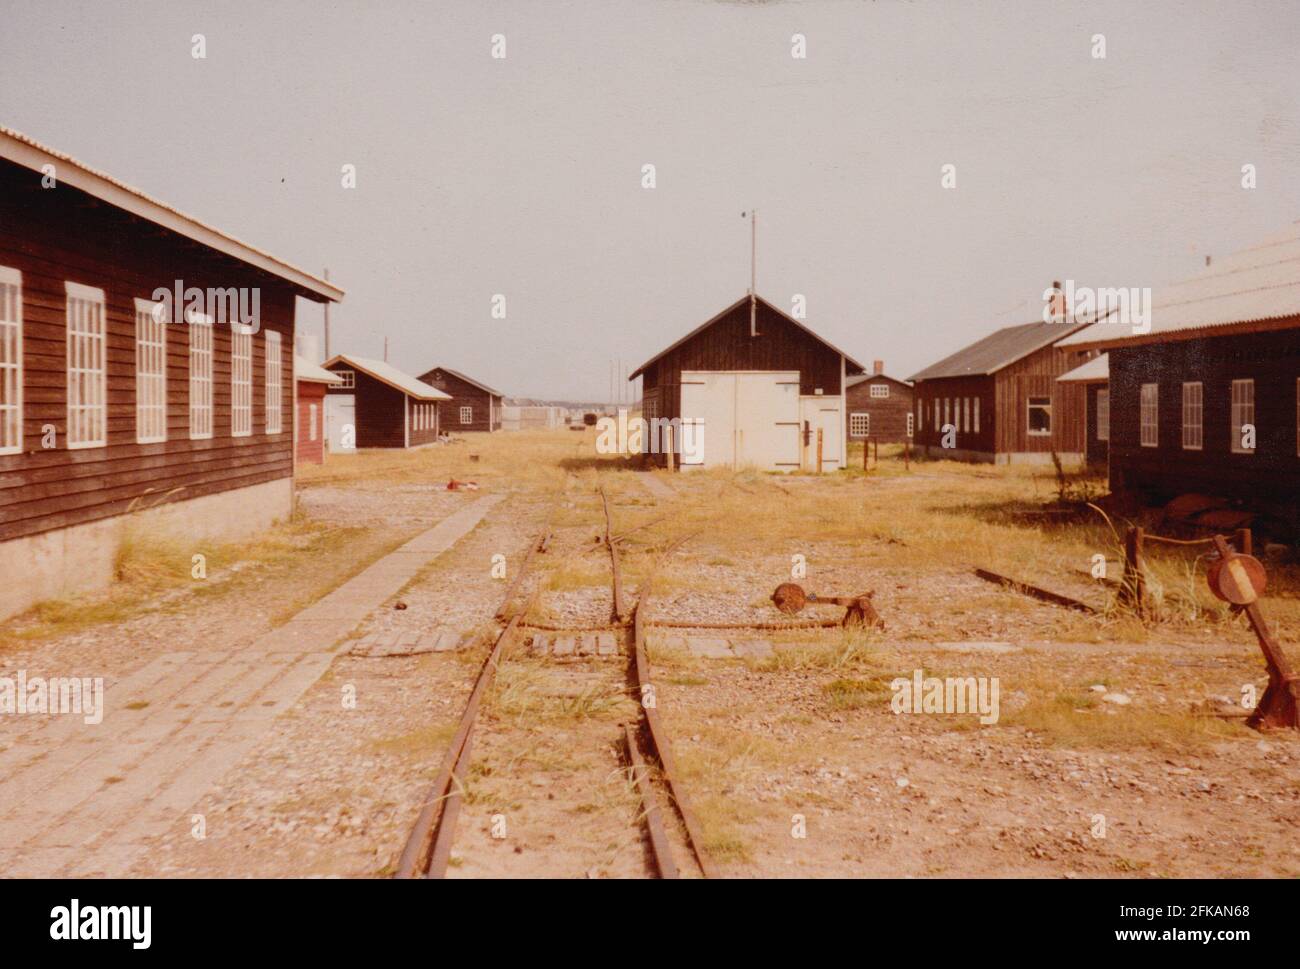 Agger, Danimarca - 1983: Le officine della manutenzione della conca 'Vandbygningsvsenet' con i binari ferroviari a scartamento ridotto (785mm) ora rimossi Foto Stock